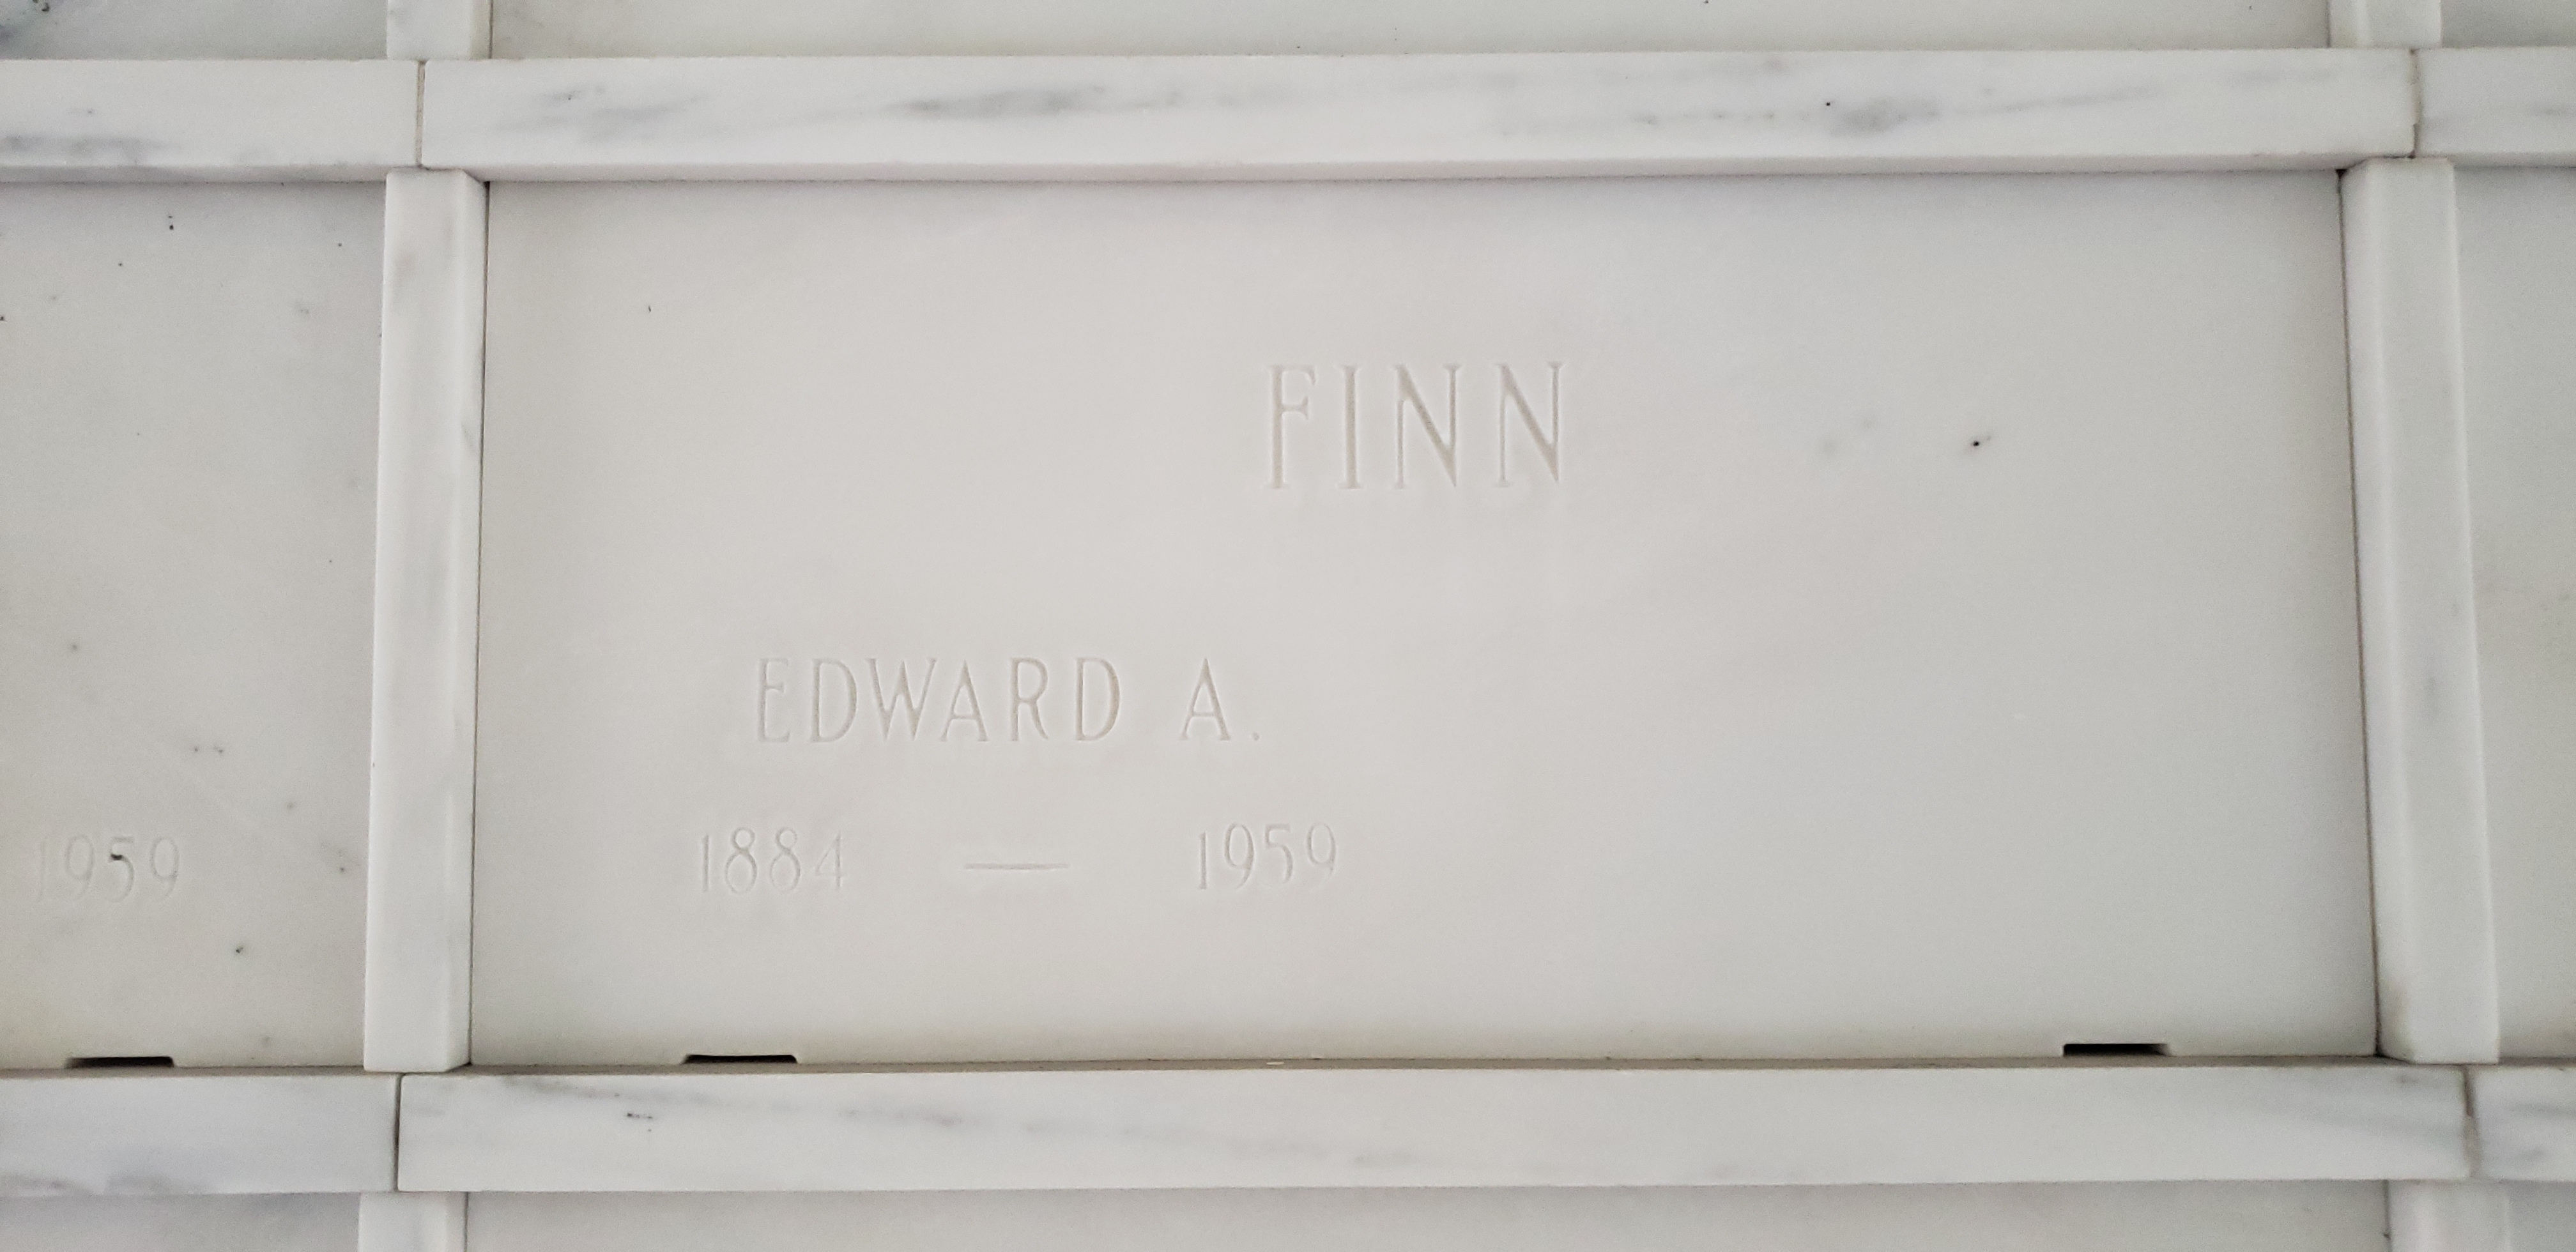 Edward A Finn